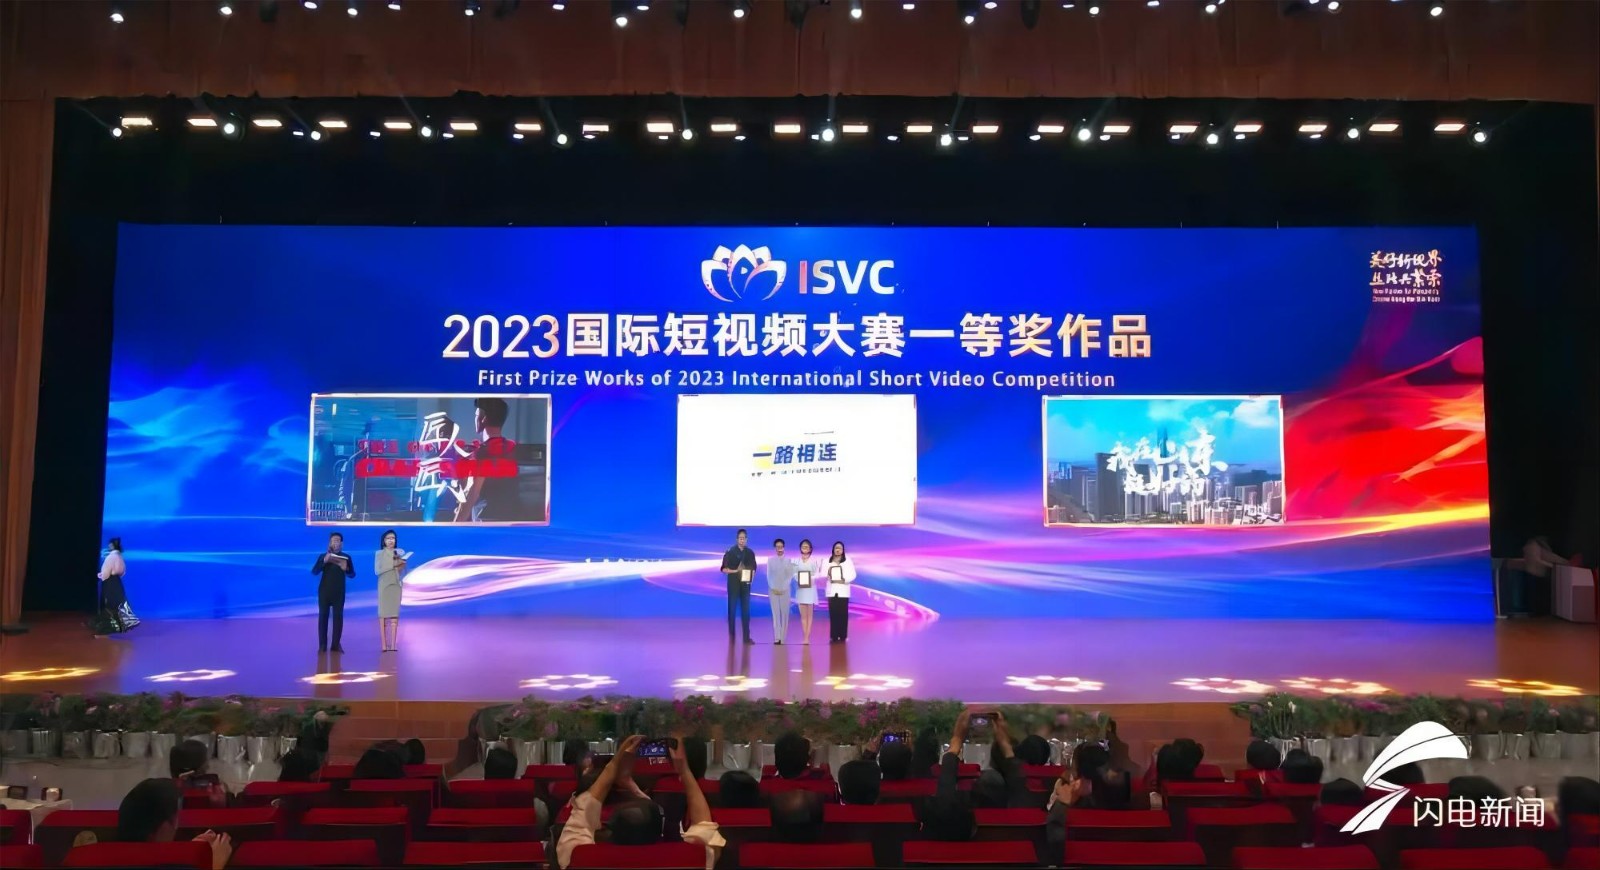 【报道】2023国际短视频大赛成果发布暨全球展播启动仪式在菏泽举办2.jpg